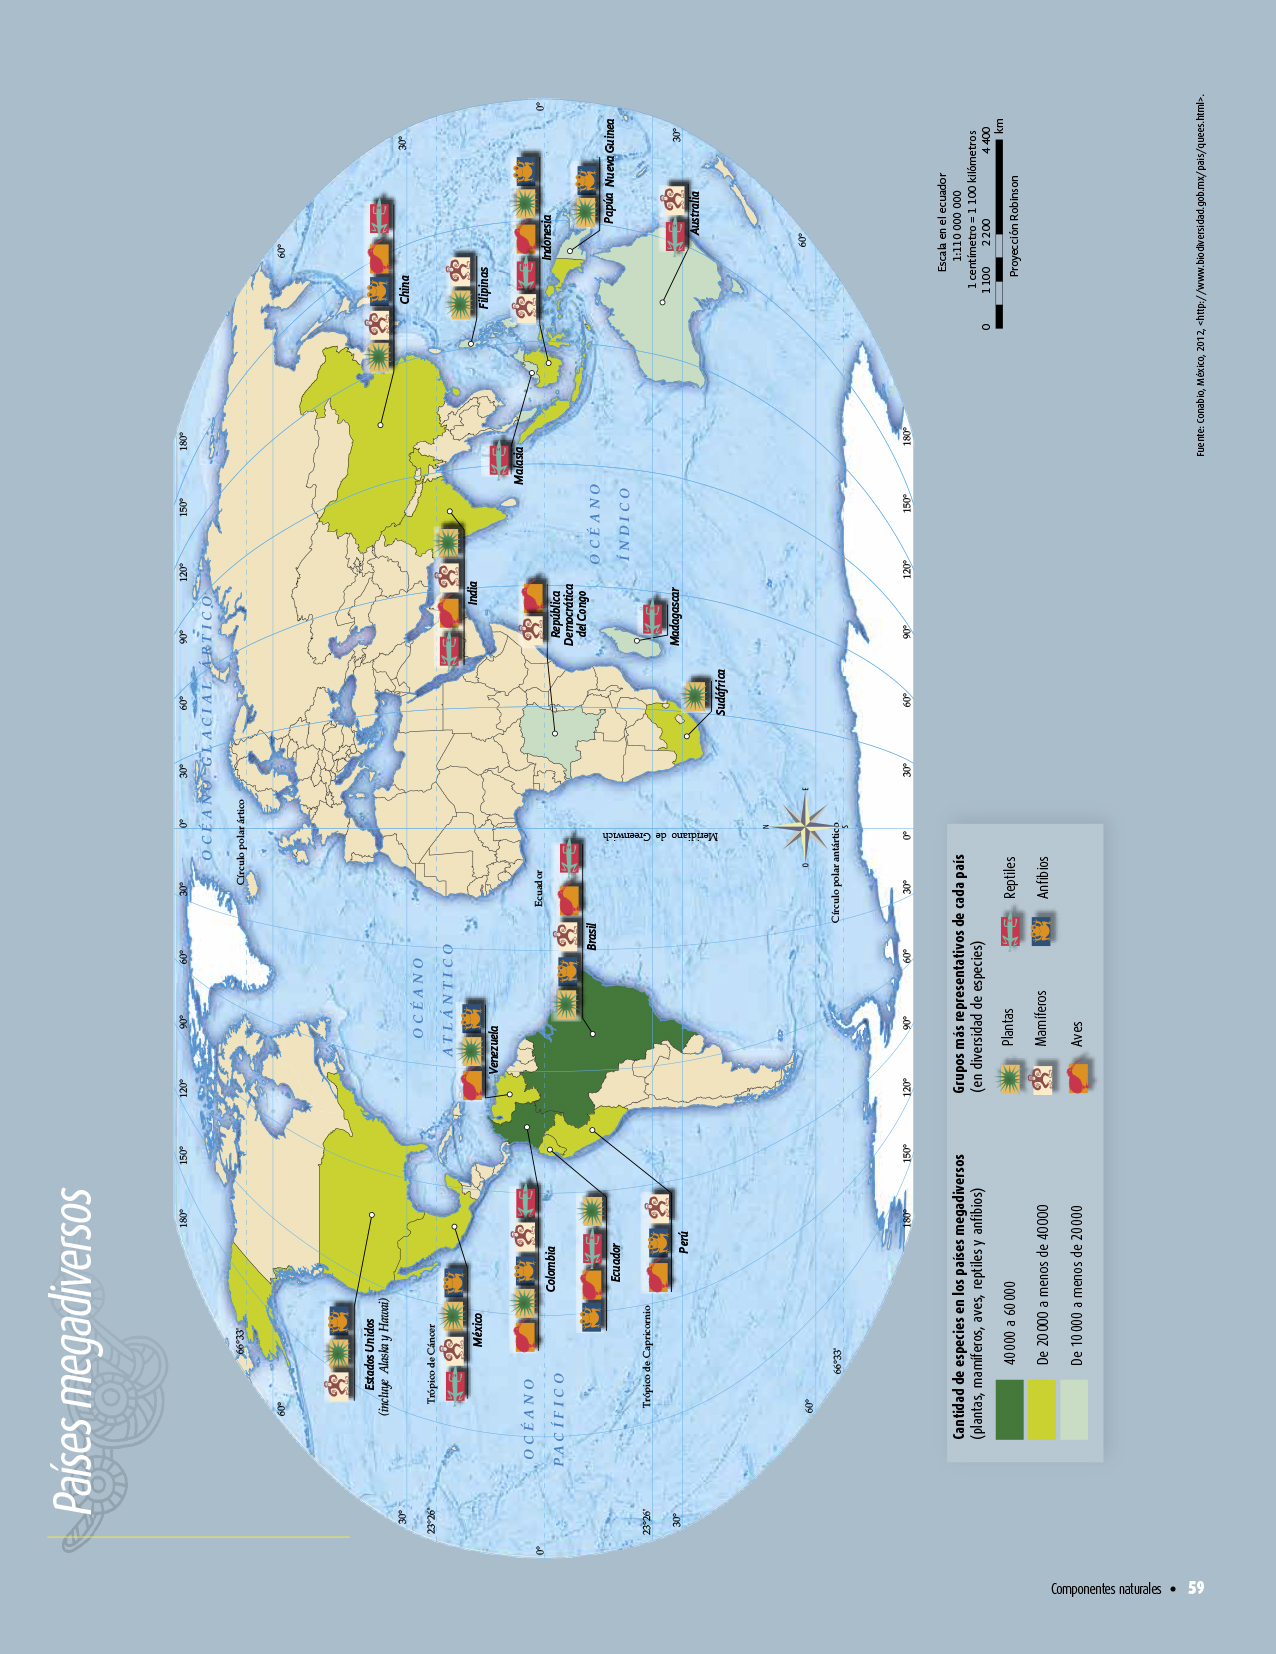 Atlas de geografía del mundo quinto grado 2017-2018 - Página 59 - Libros de Texto Online